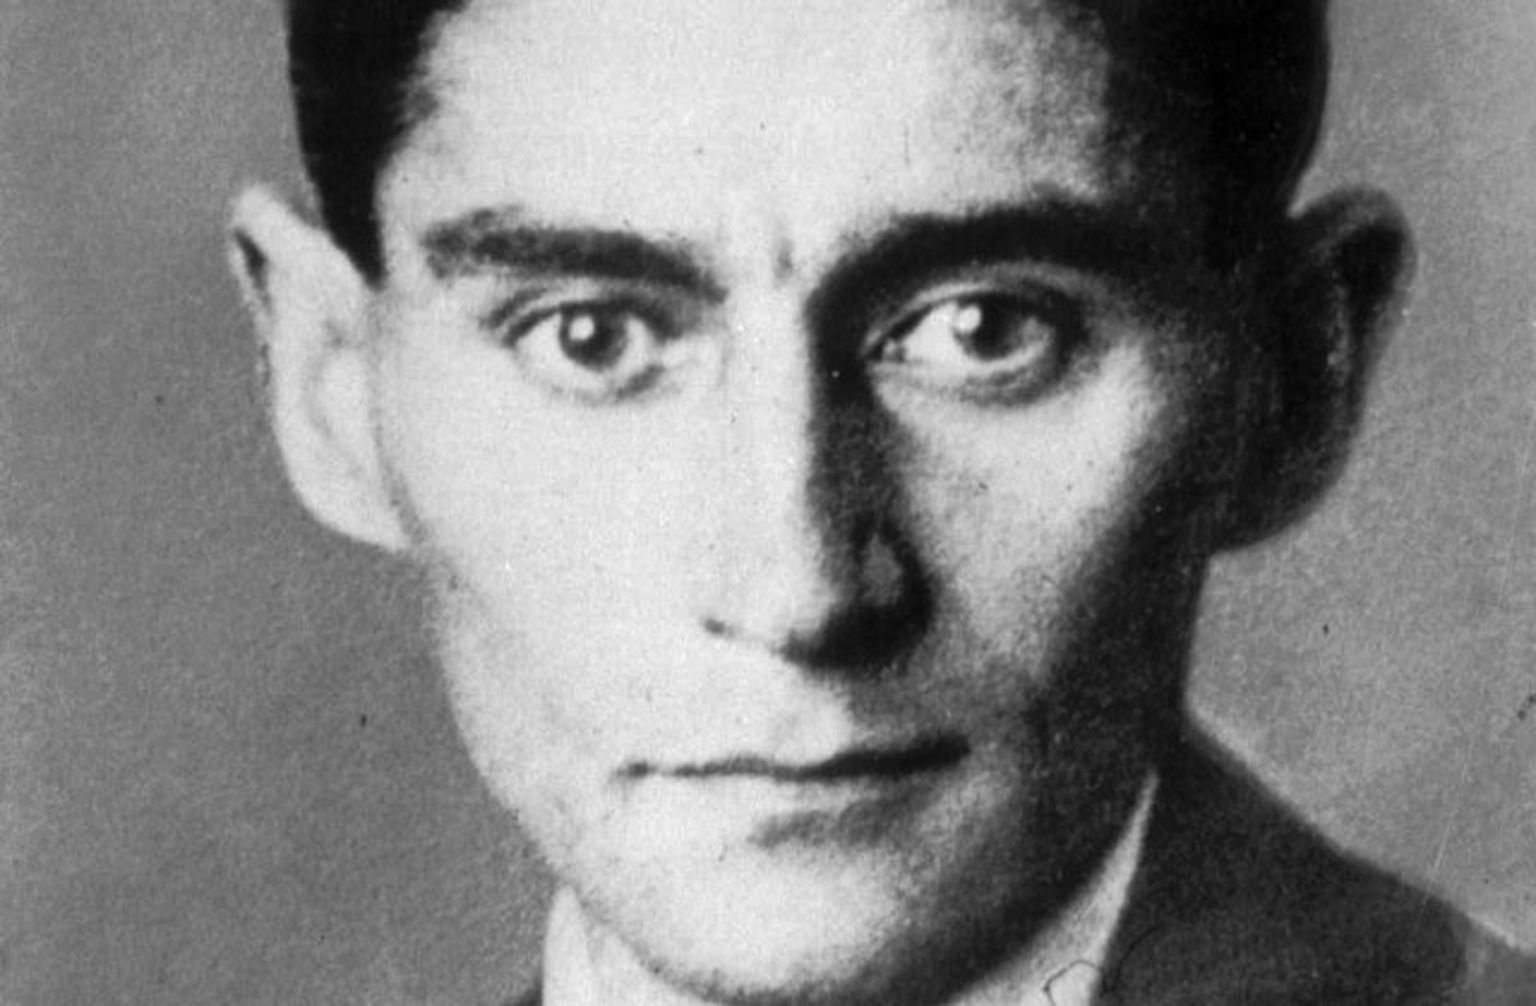 Francs Kafka